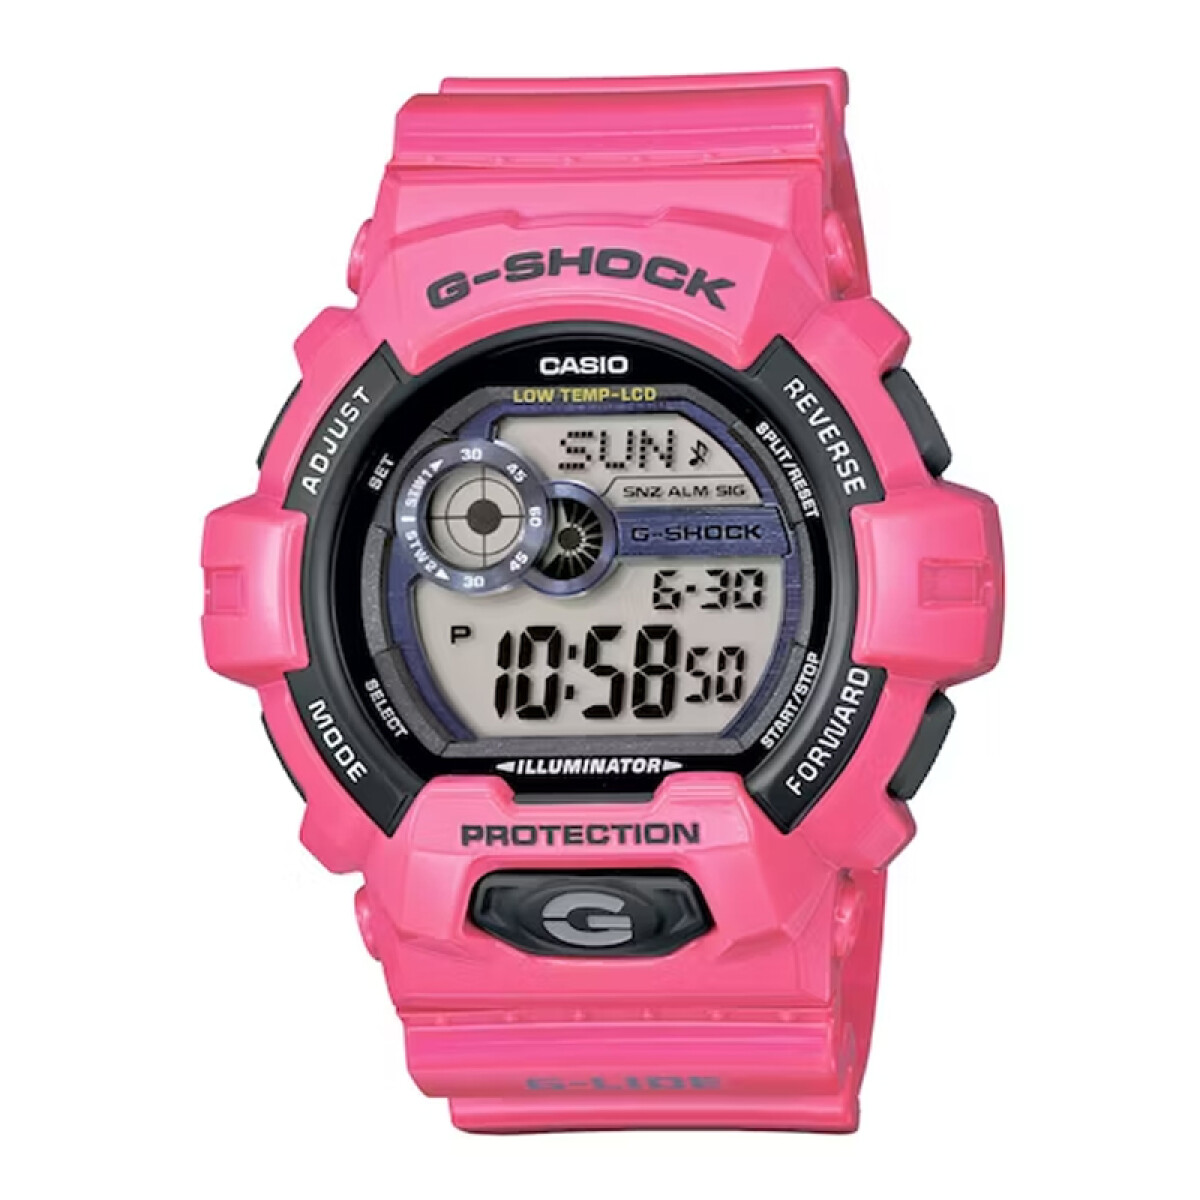 Reloj G-Shock Casio Digital GLS-8900 - -4DR 